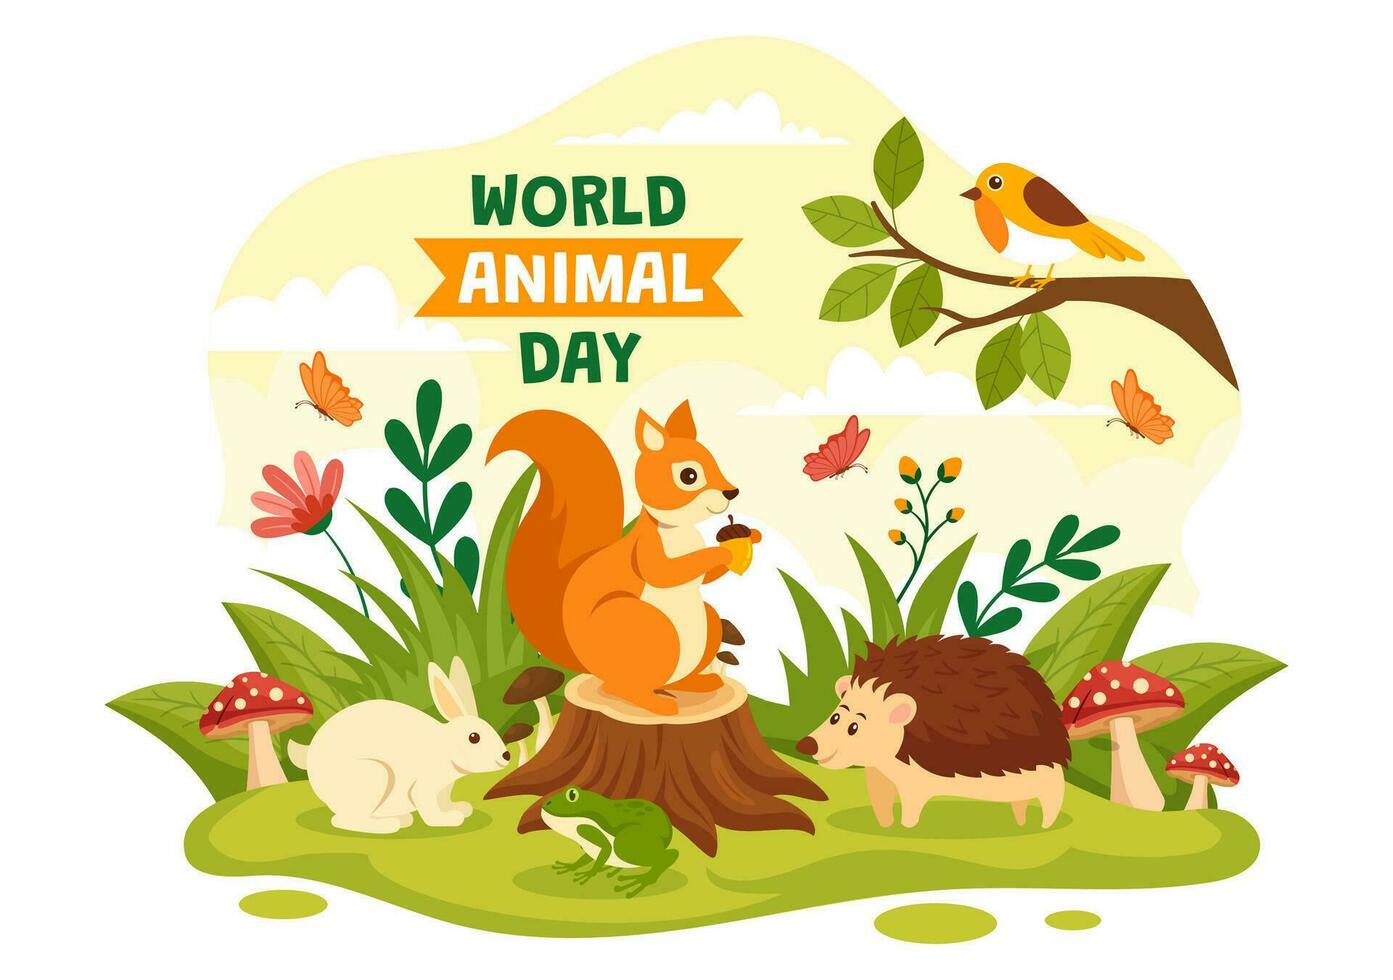 monde animal journée vecteur illustration avec divers animaux ou faune pour habitat protection et forêt dans plat dessin animé Contexte modèles